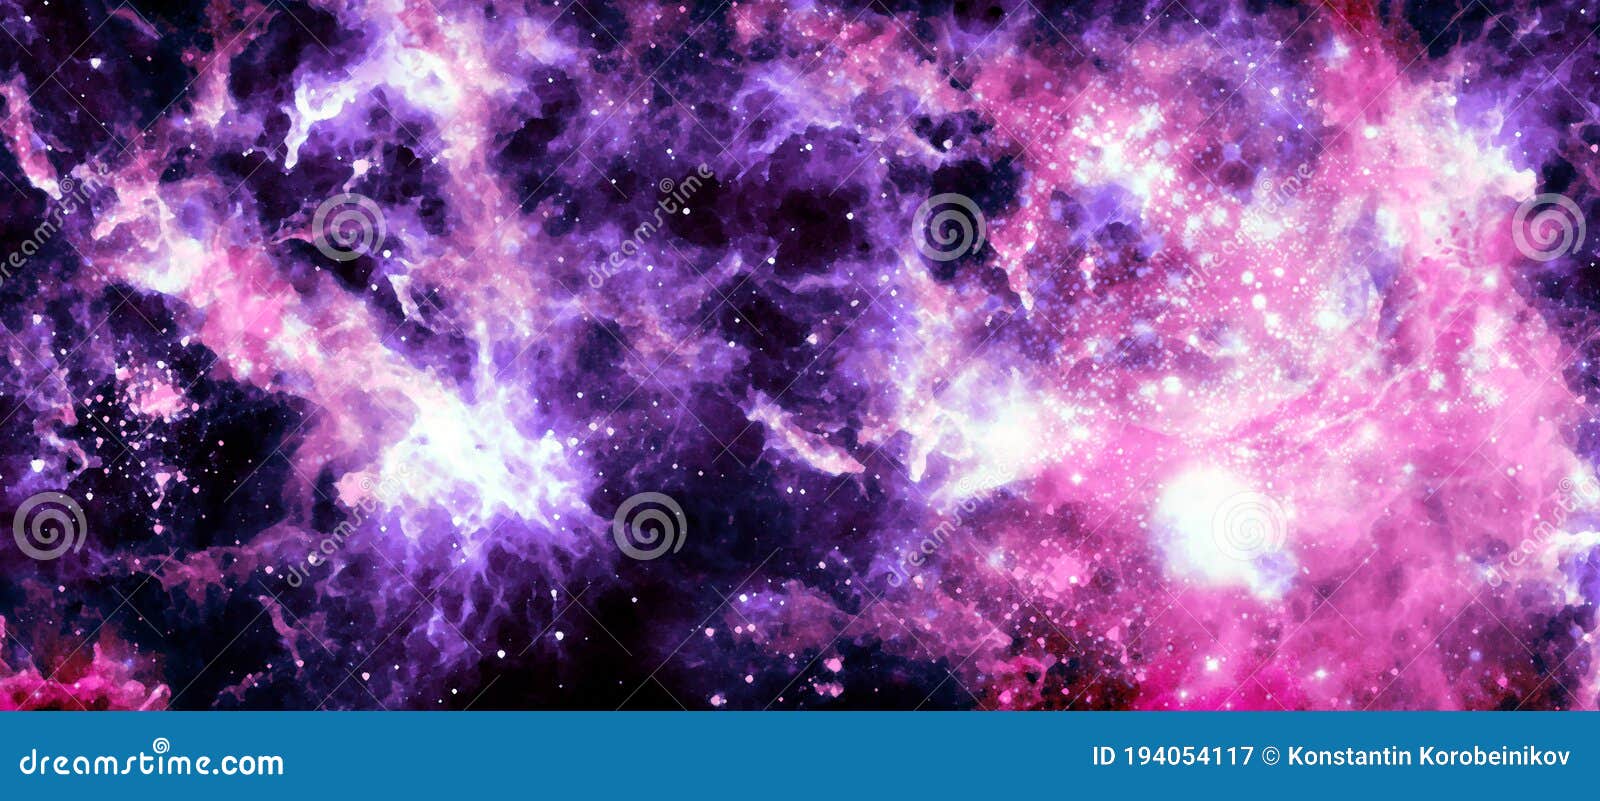 Dịch chuyển đến không gian sao băng đầy màu sắc với Galaxy Colorful Background Texture. Thiết kế của bạn sẽ trở nên sống động và cuốn hút hơn.